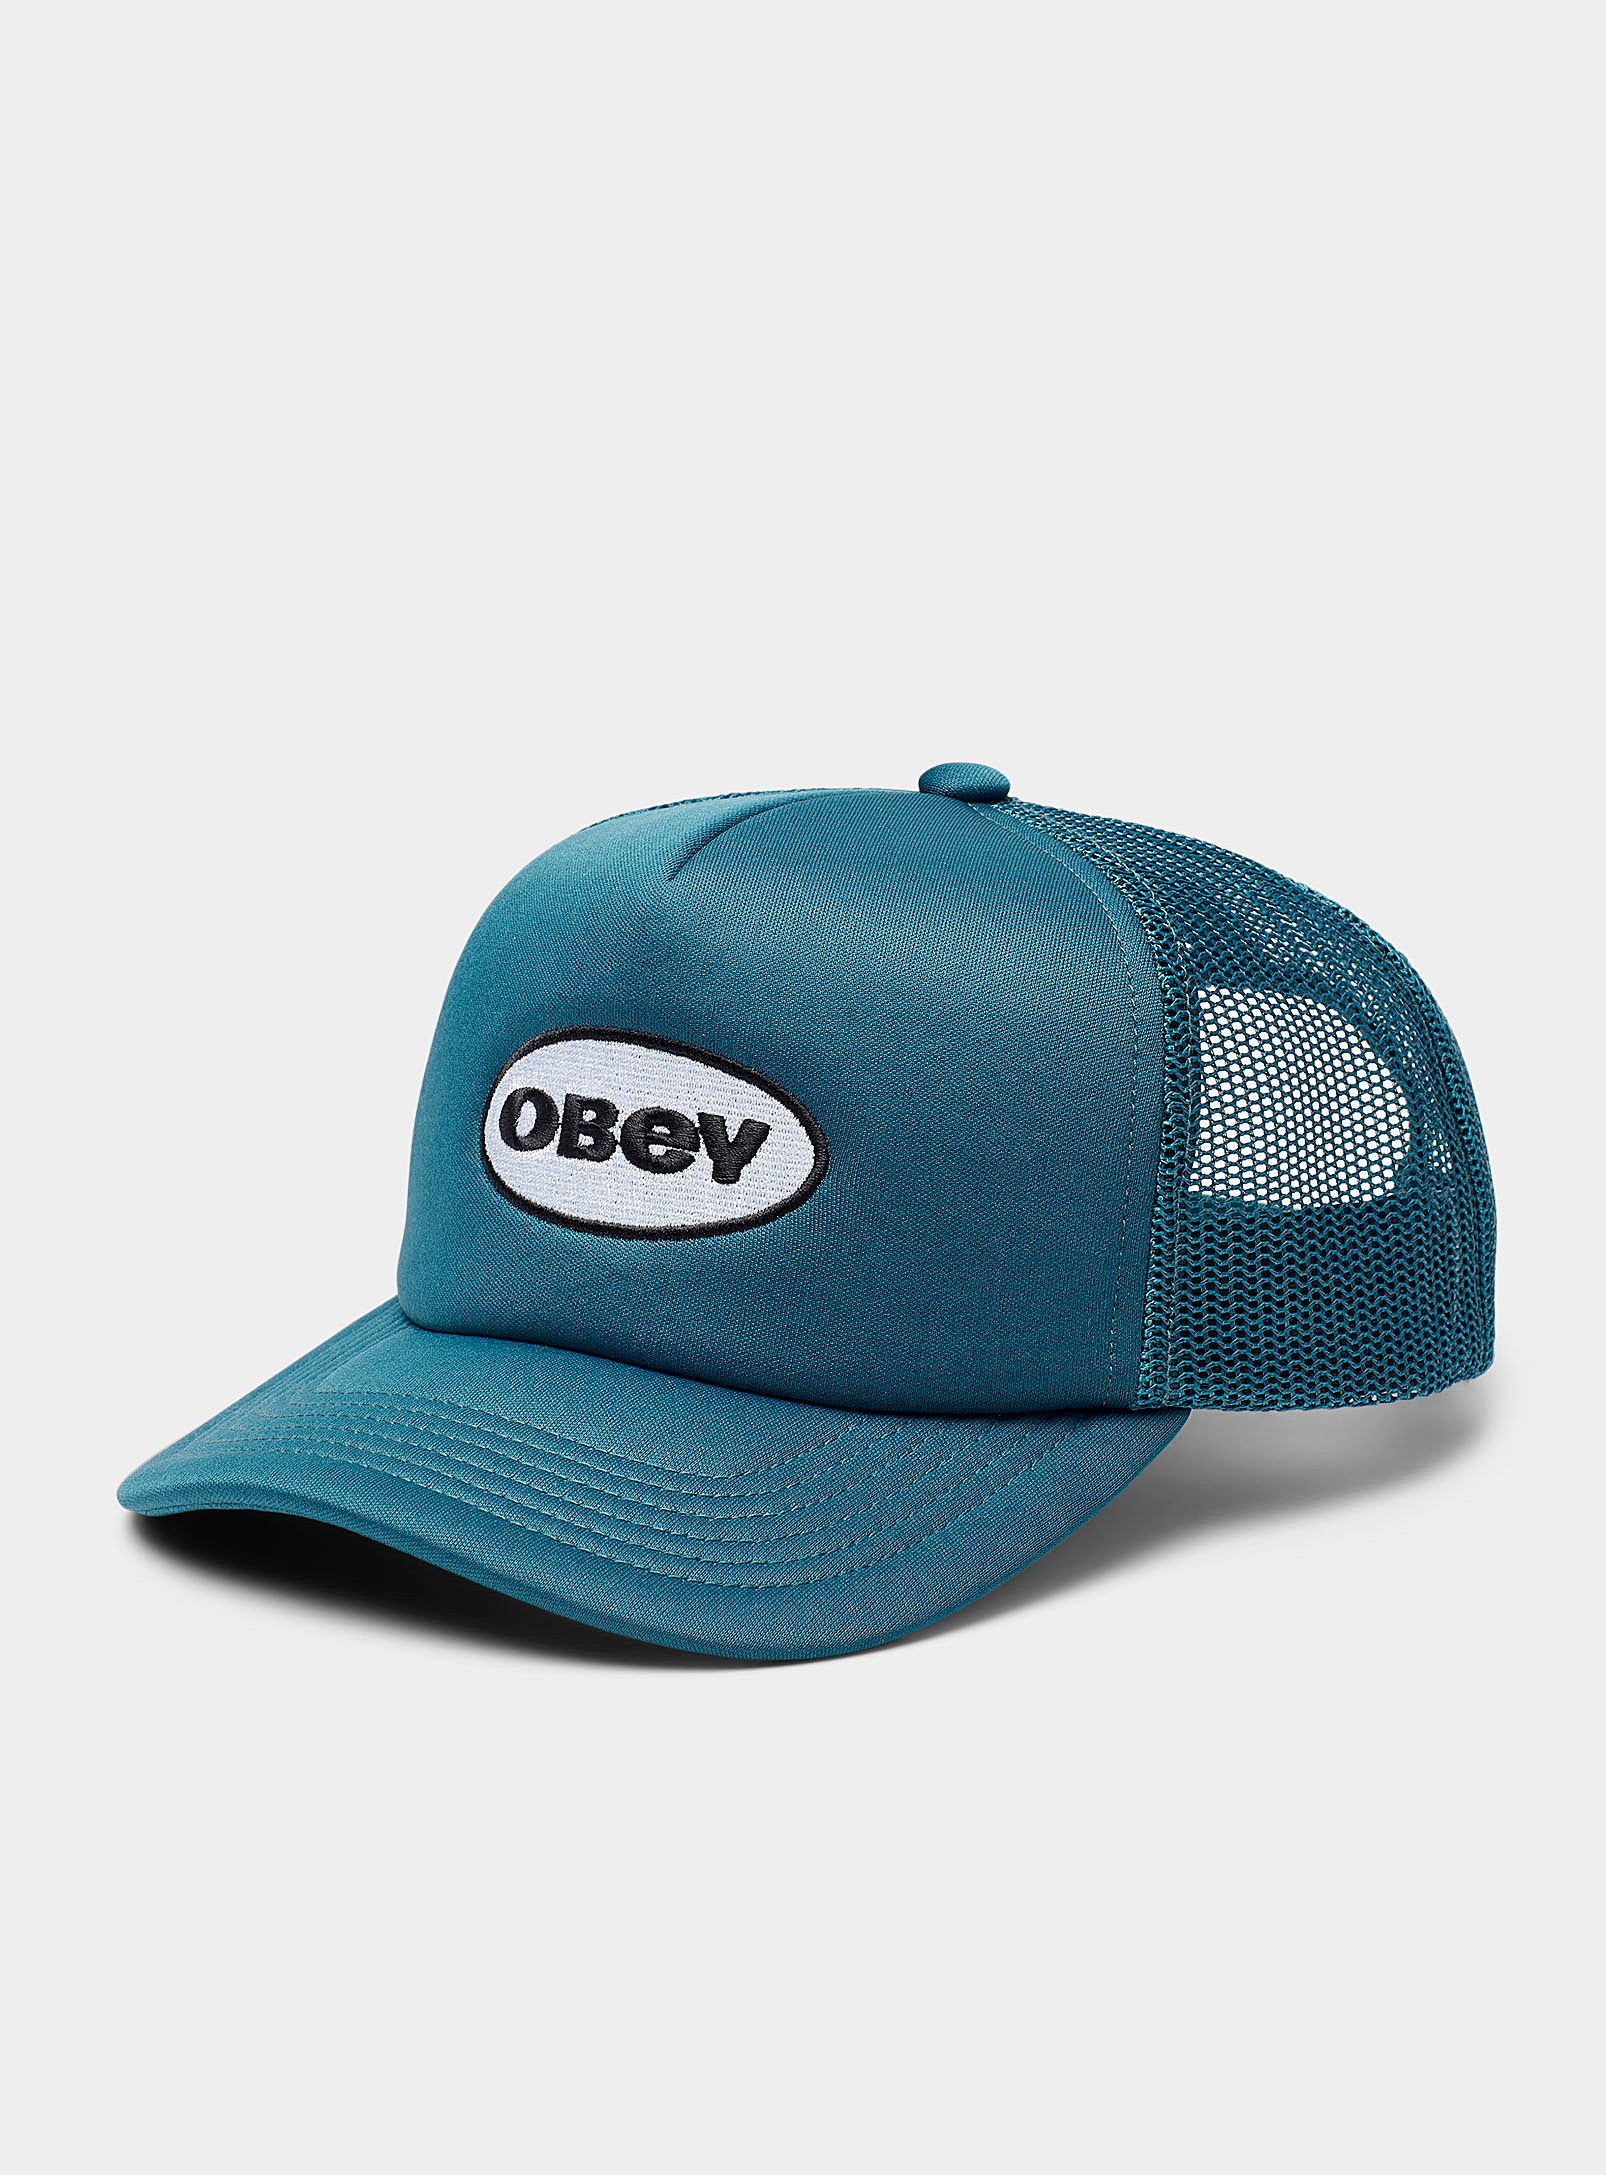 Obey - Men's Oval logo trucker cap